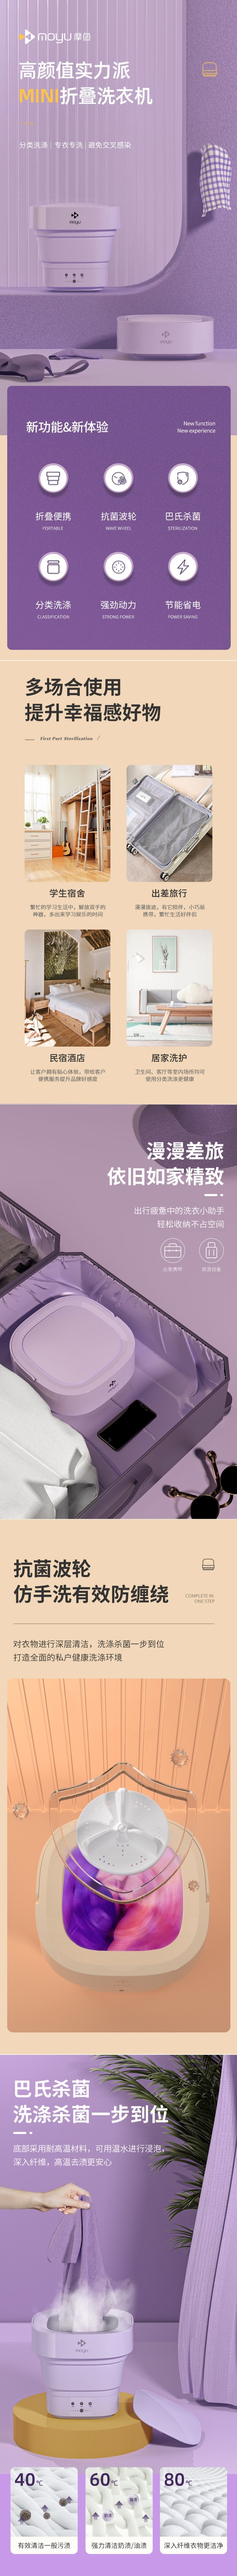 【中国直邮】摩鱼迷你洗衣机 紫色110V 内衣内裤袜子清洗机家用小型洗衣机折叠洗衣机